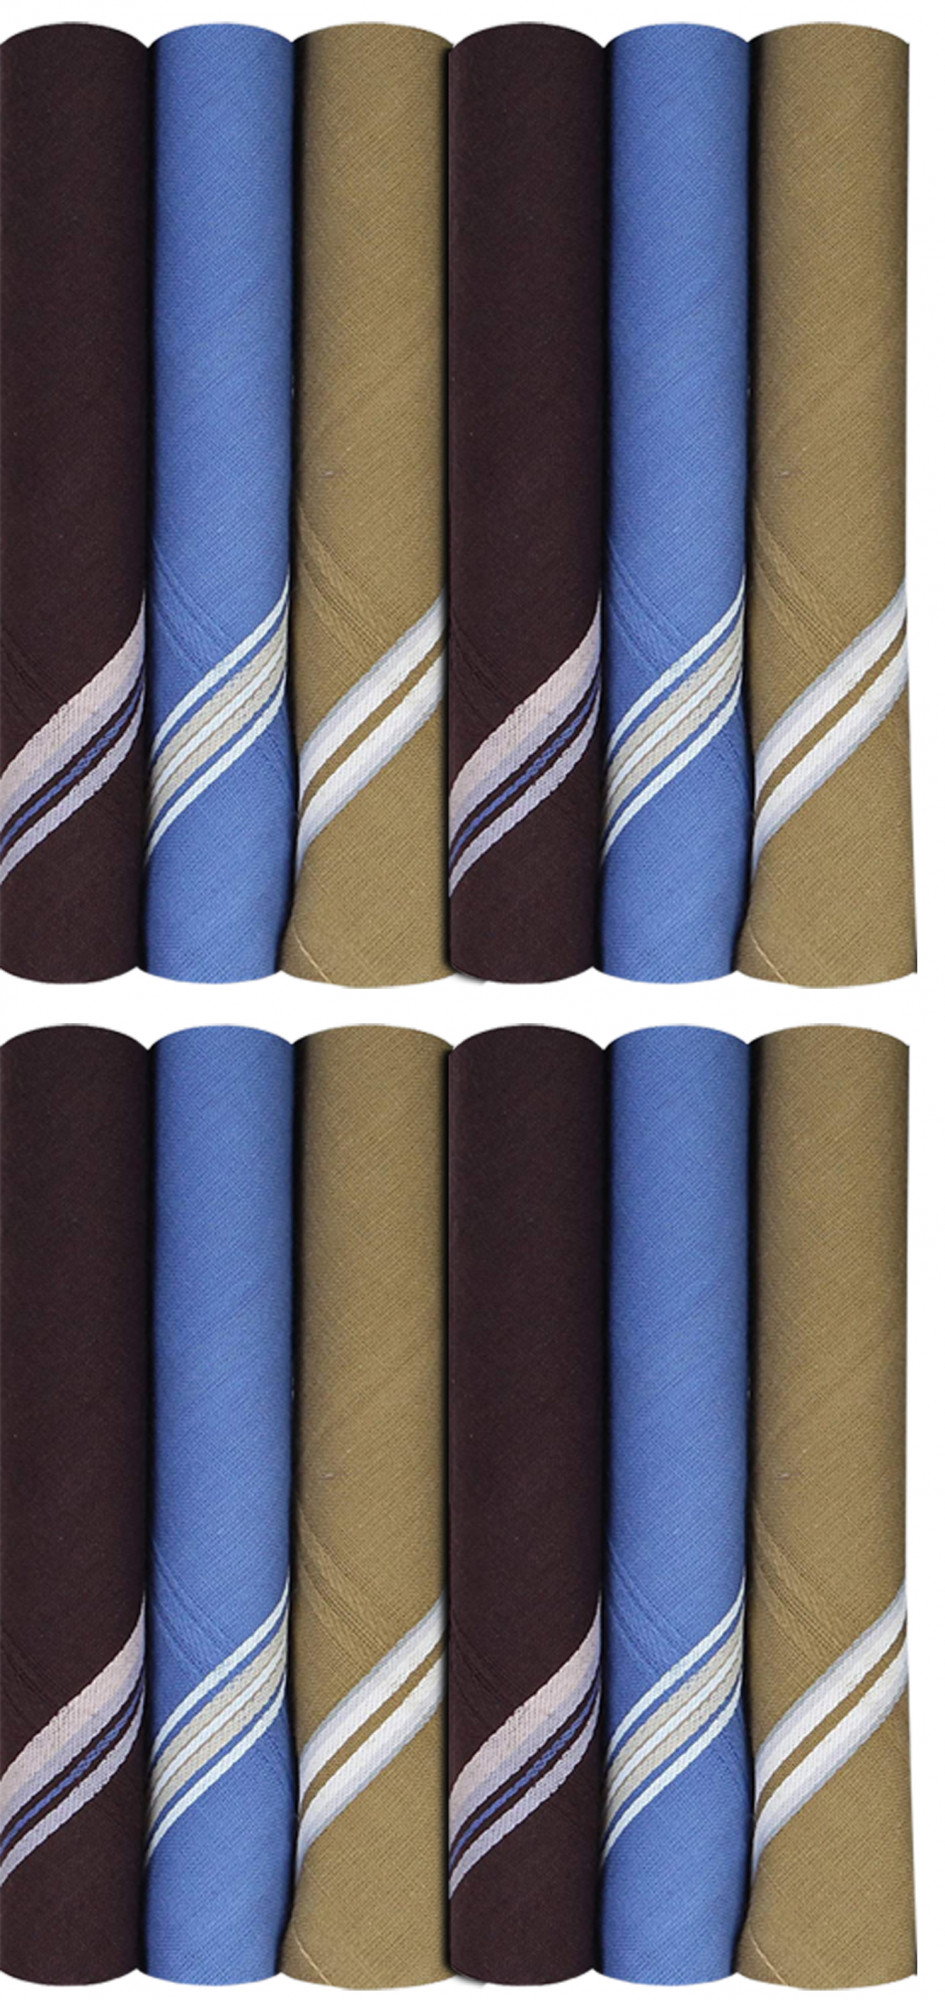 Kuber Industries 100% Cotton Premium Collection HAndkerchiefs Hanky For Men,(Dark color)